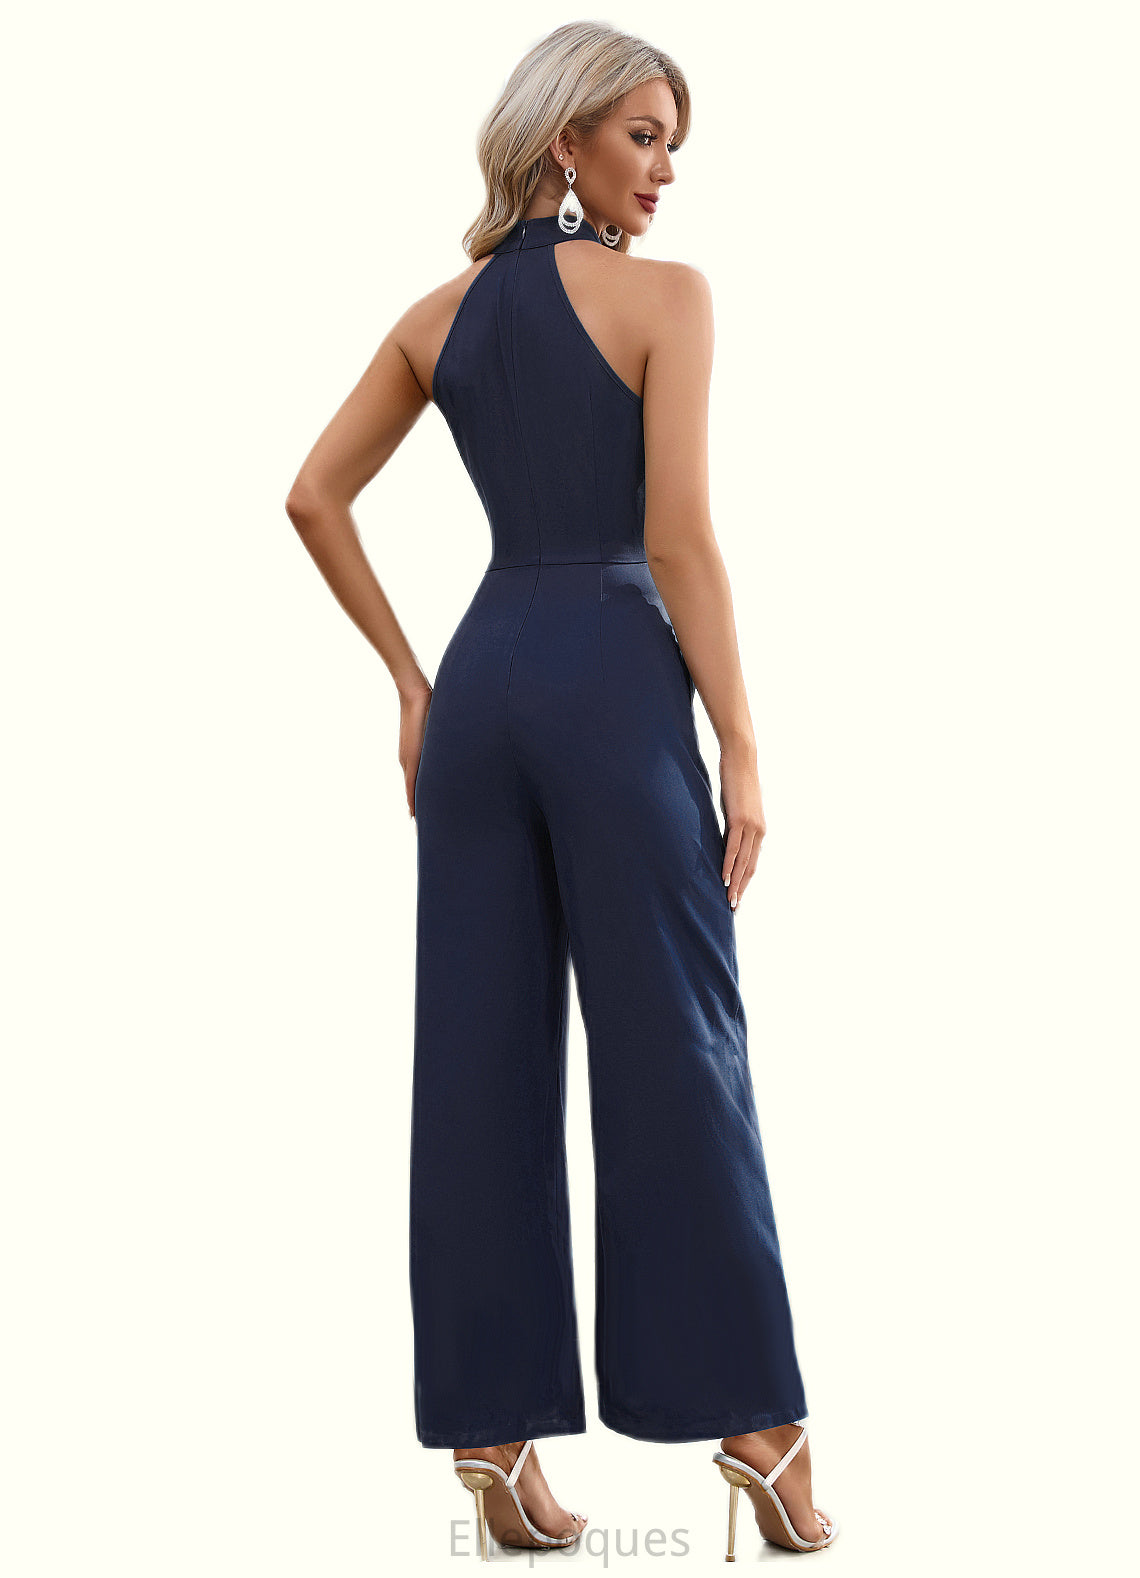 Lilianna High Neck Elegant Jumpsuit/Pantsuit Polyester Maxi Dresses HOP0022551